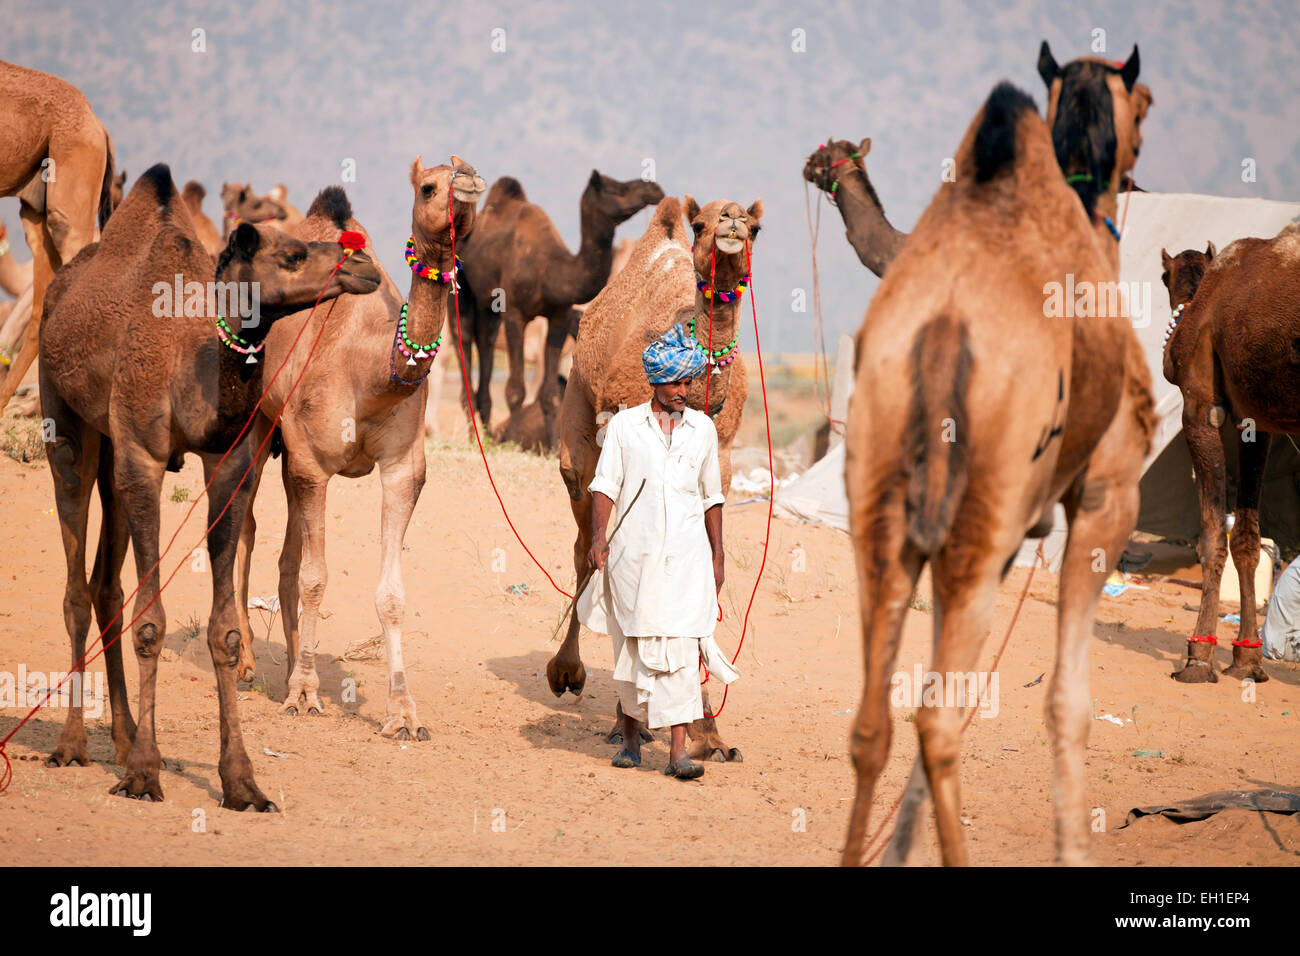 Les hommes du Rajasthan avec une robe traditionnelle typique et leur camel le chameau à Pushkar juste ou équitable Pushkar Mela, Pushkar, Inde Banque D'Images